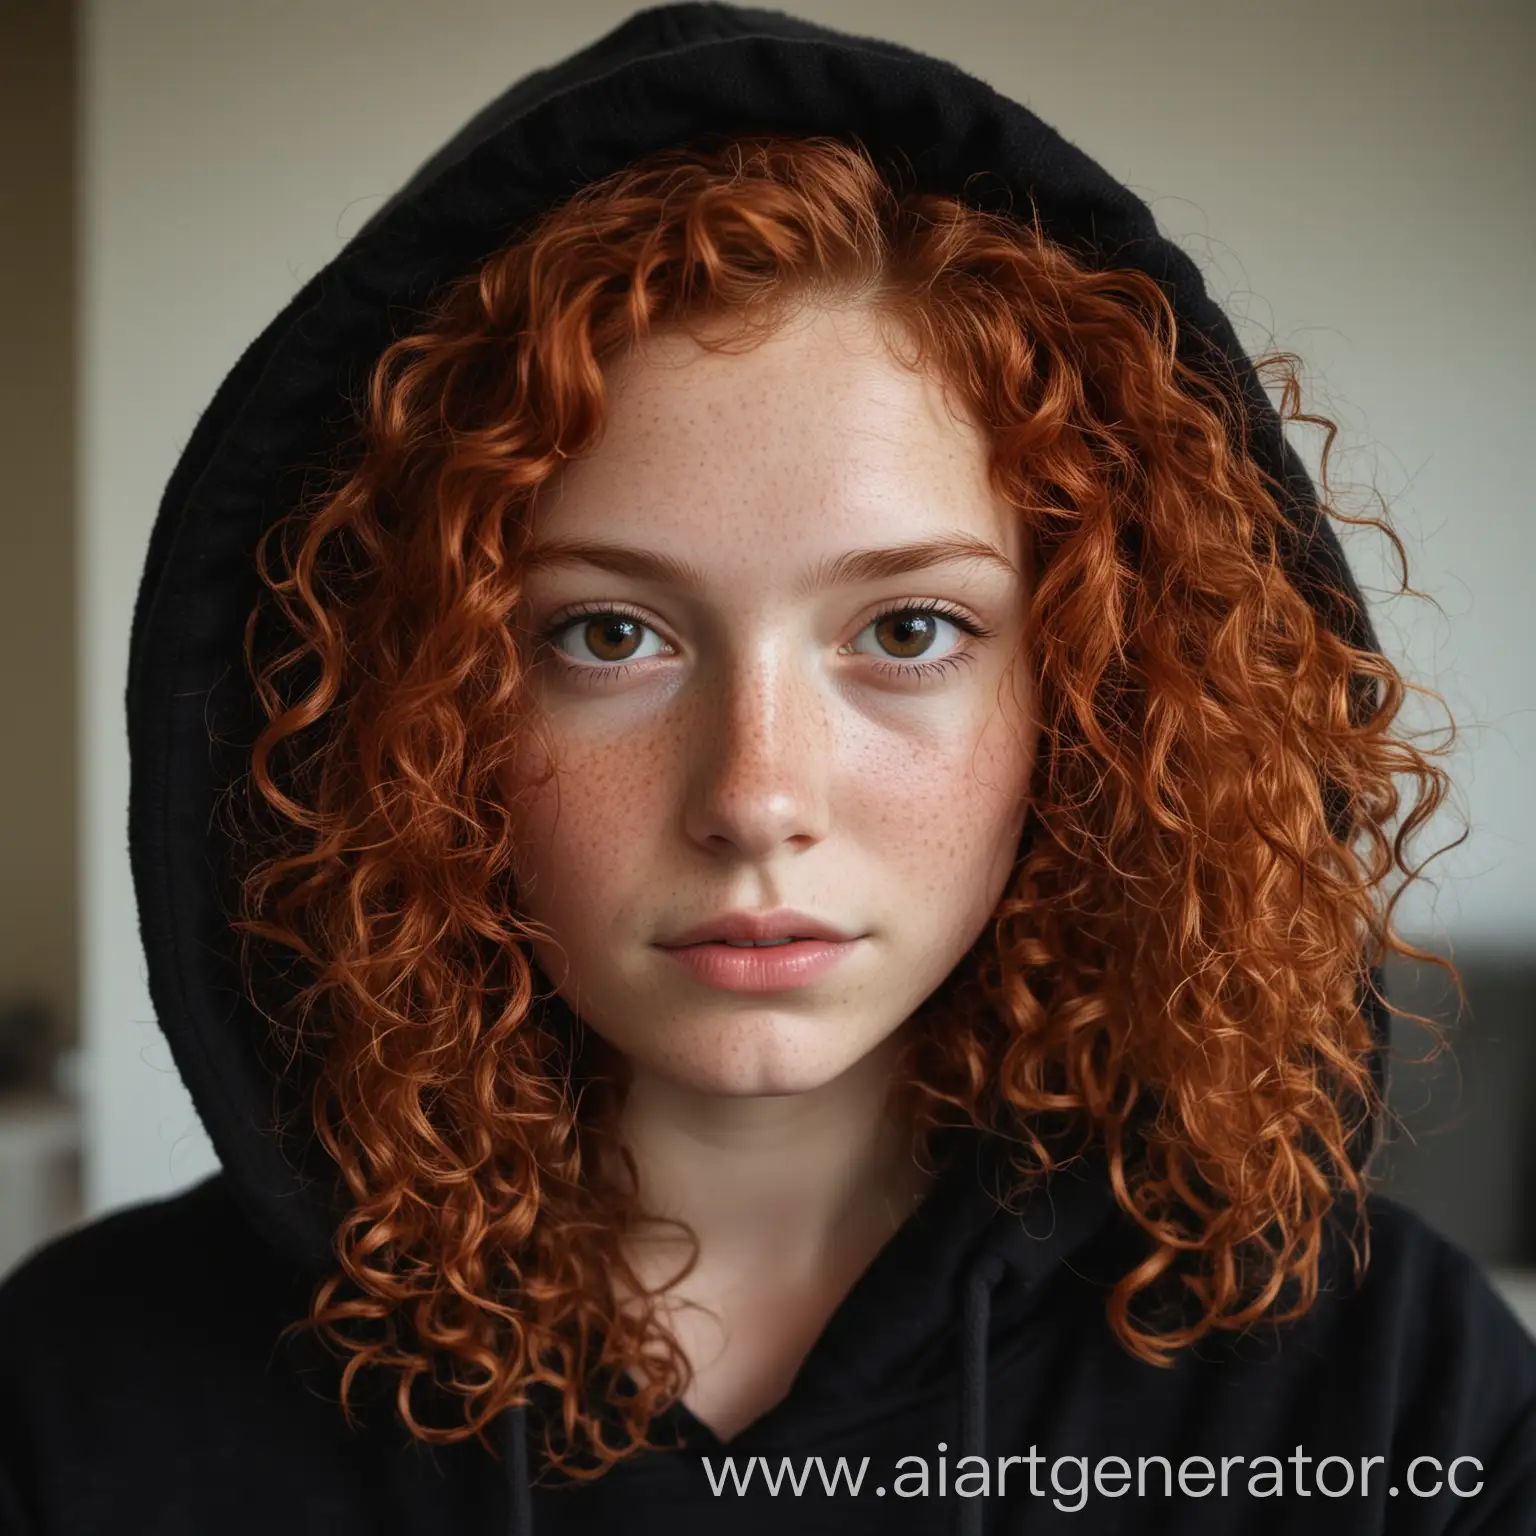 Естественное фото девушки с рыжими кудрявыми волосами до лопаток, карими глазами, веснушками в чёрном худи в домашней атмосфере